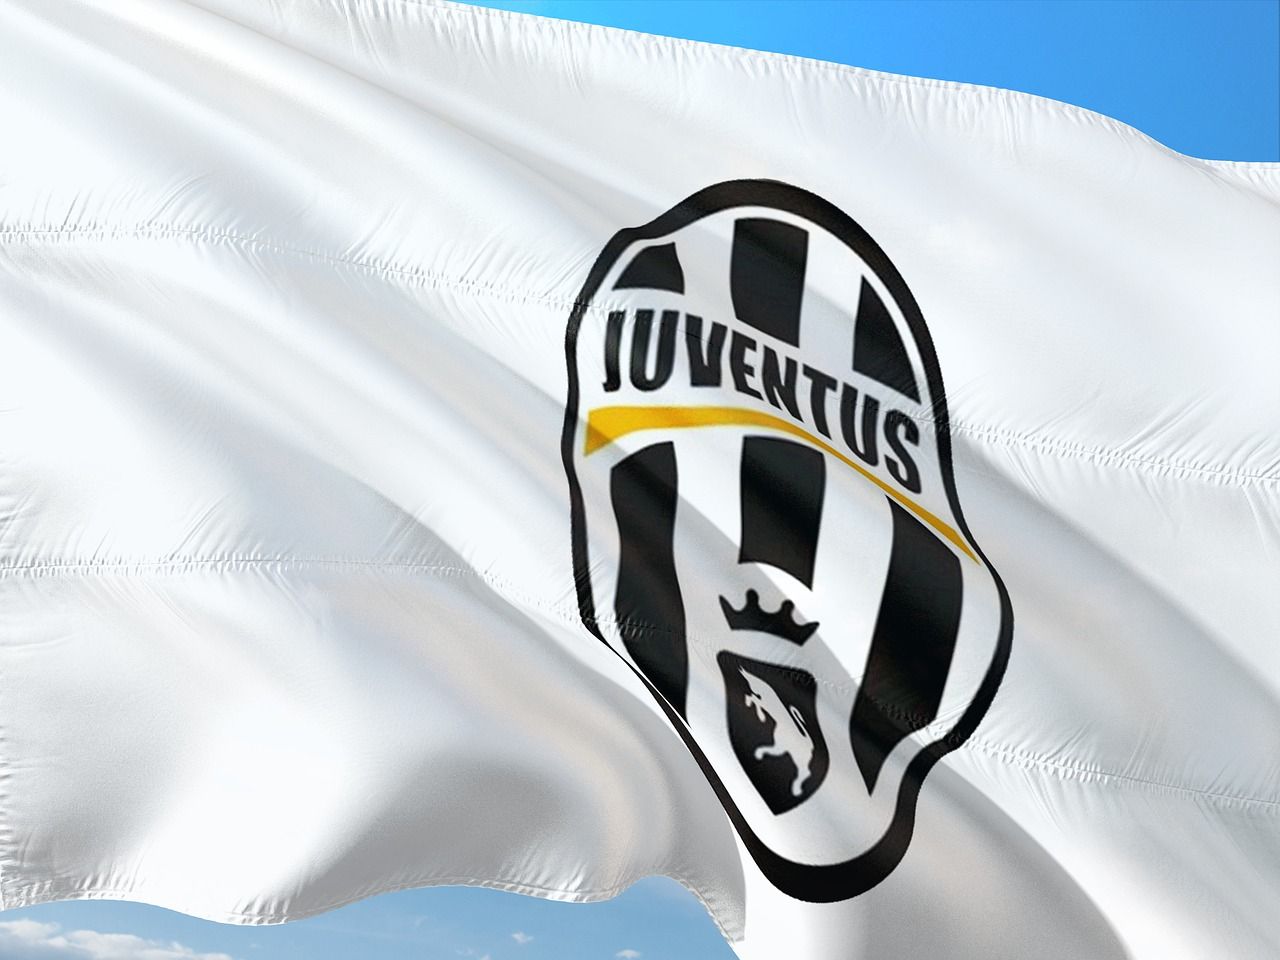 Juventus flag